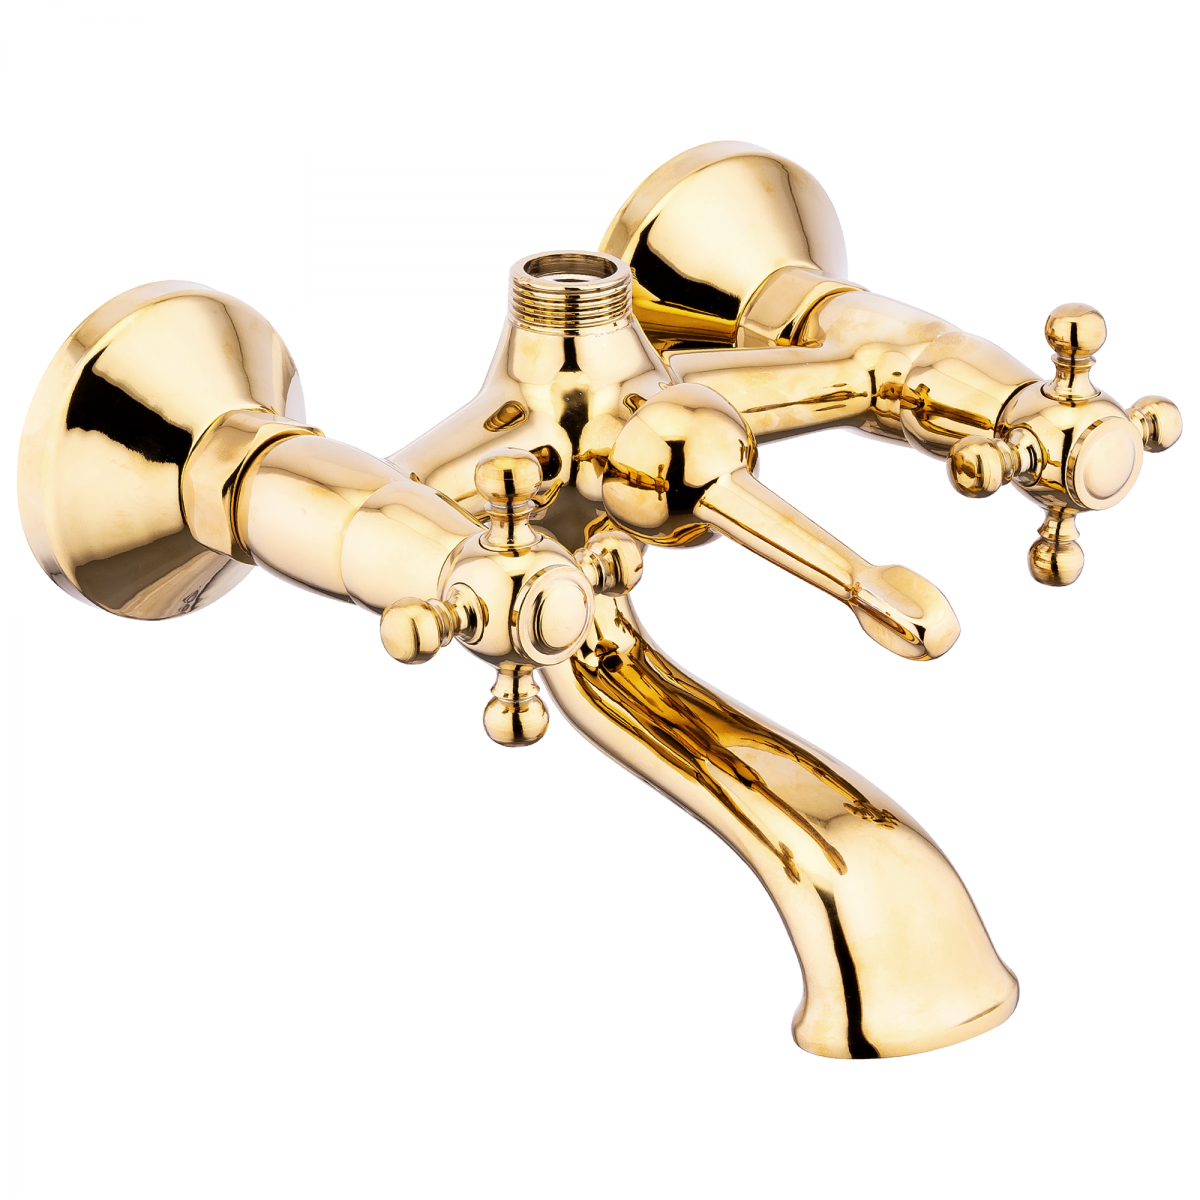 FKN Koç Taşlı Altın Banyo Bataryası 5 Yıl sızdırmazlık garantili özel tasarım ürün